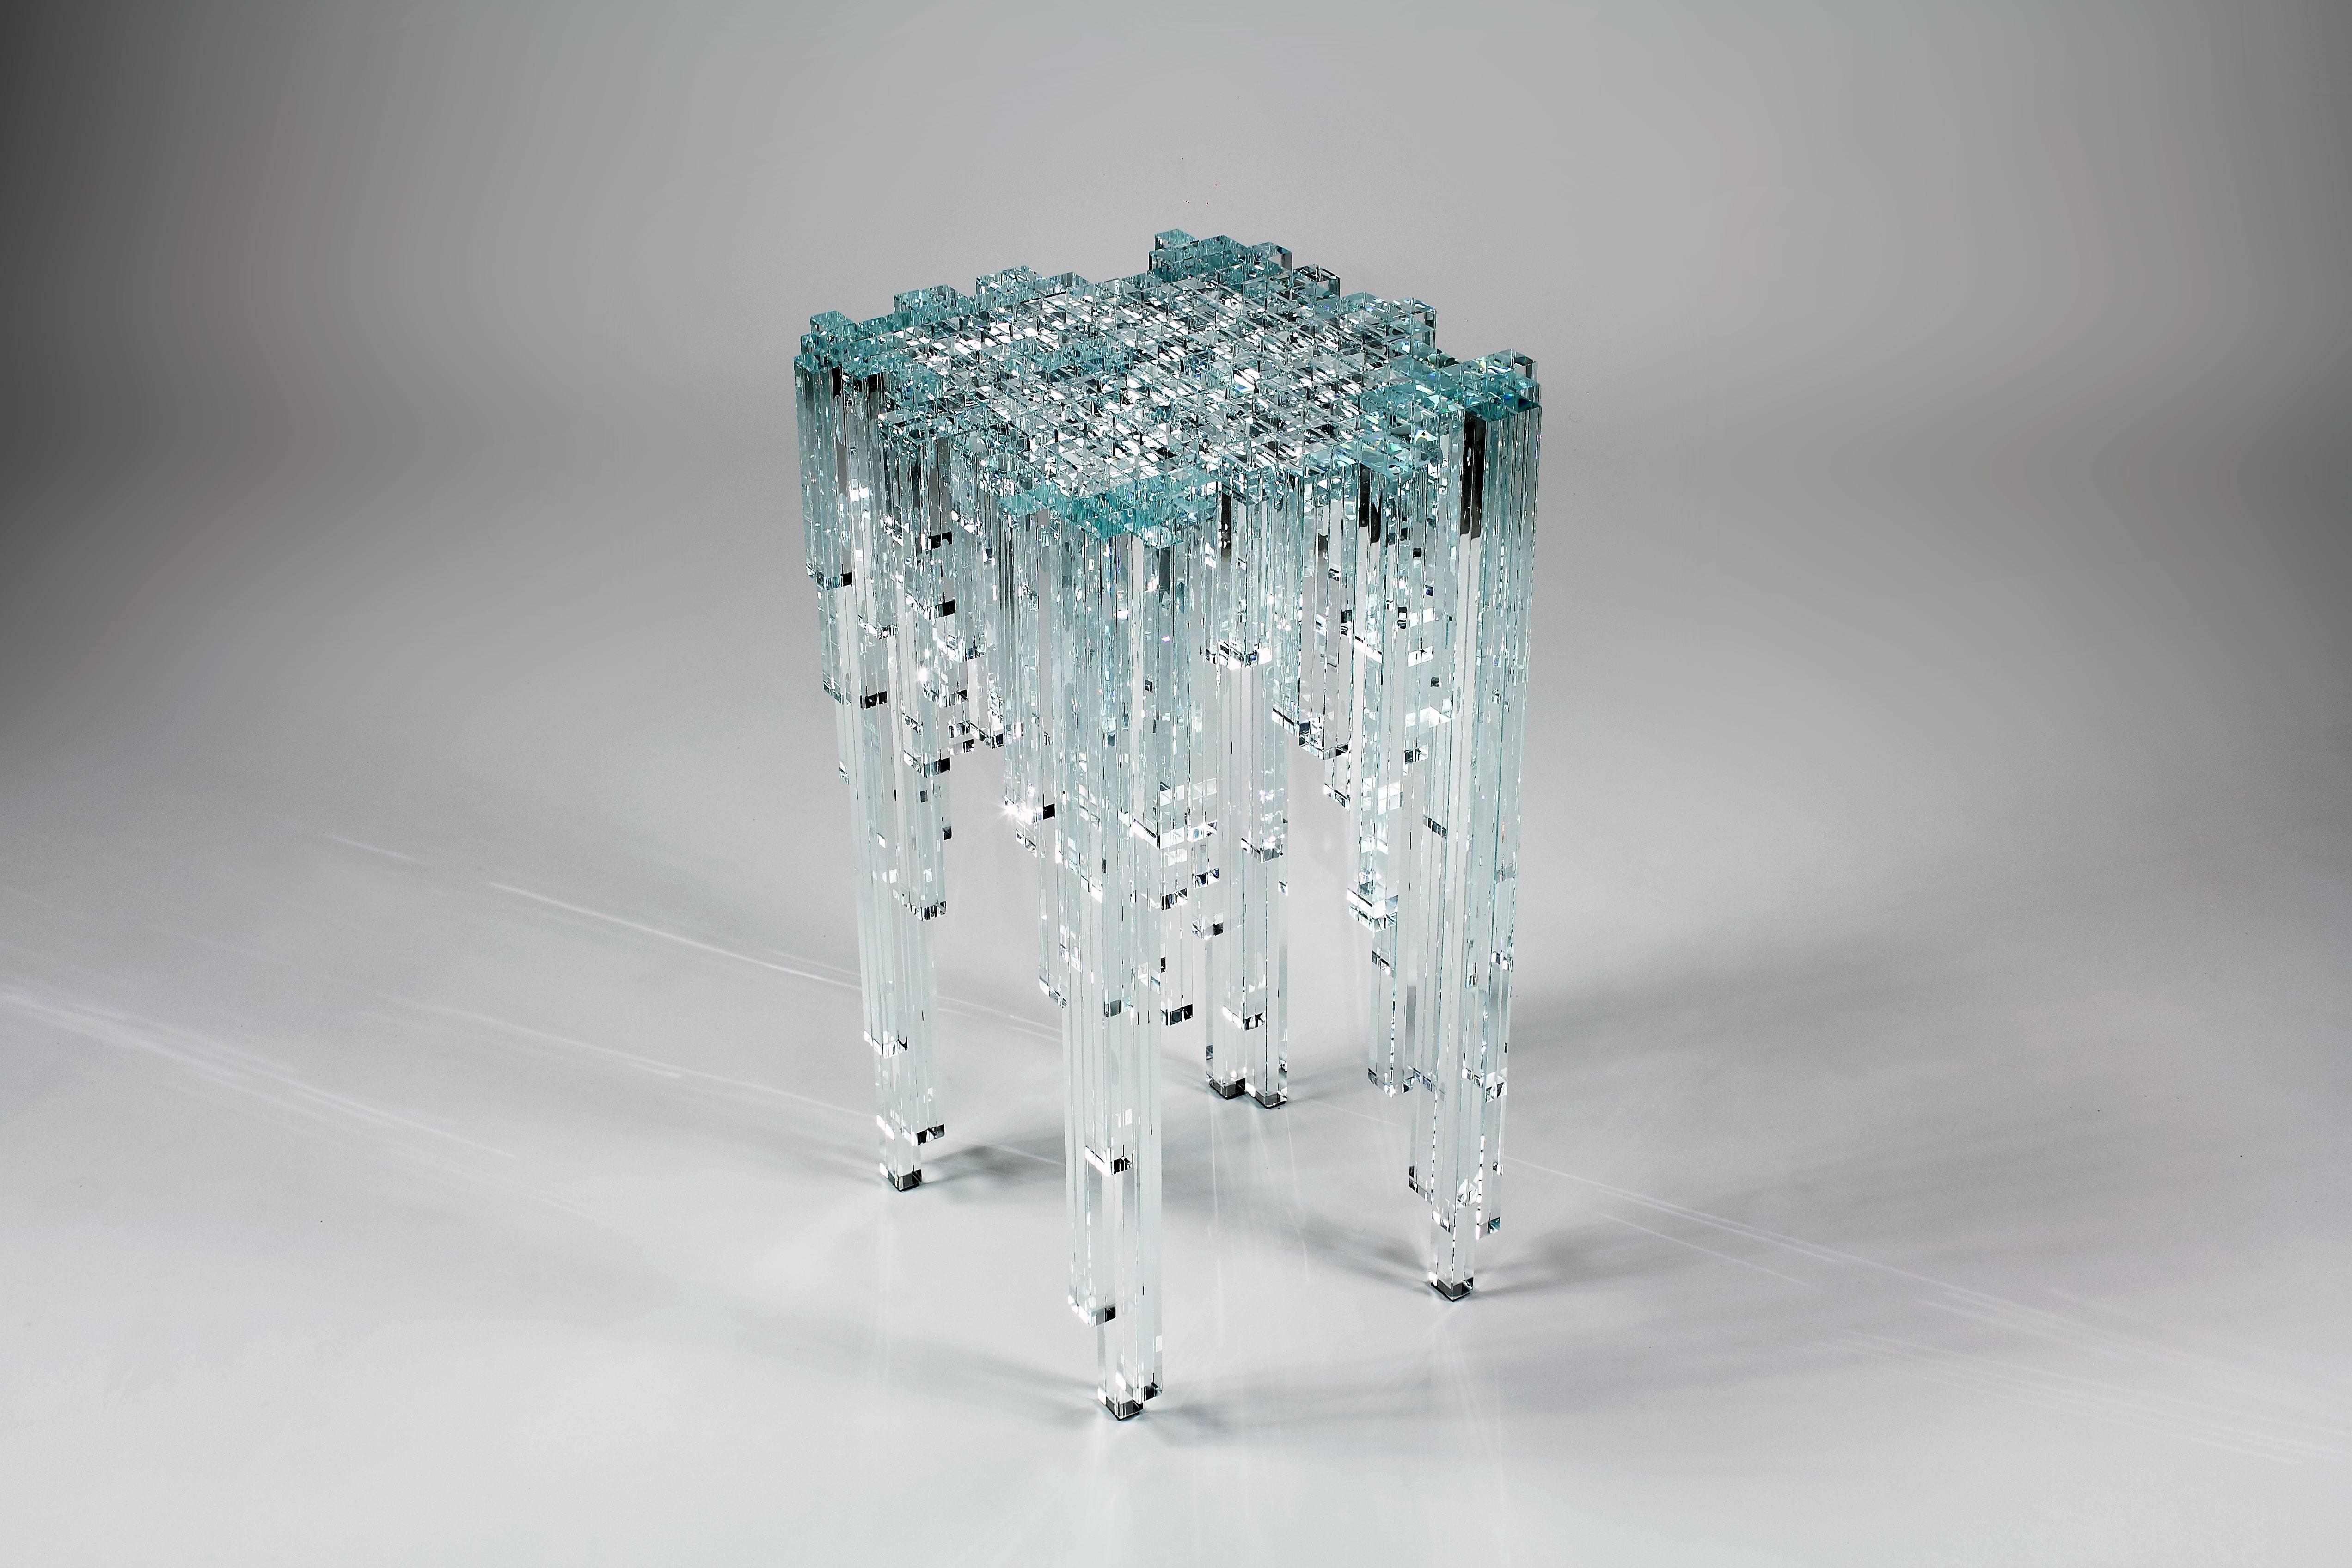 Der Beistelltisch 'Cascata'  besteht aus 219 Kristallglaselementen, die einzeln von Hand zusammengesetzt werden. Dieser Tisch glänzt wie ein Juwel. Augenblick eines immerwährenden Flusses, unbewegtes Wasser in einem kristallinen